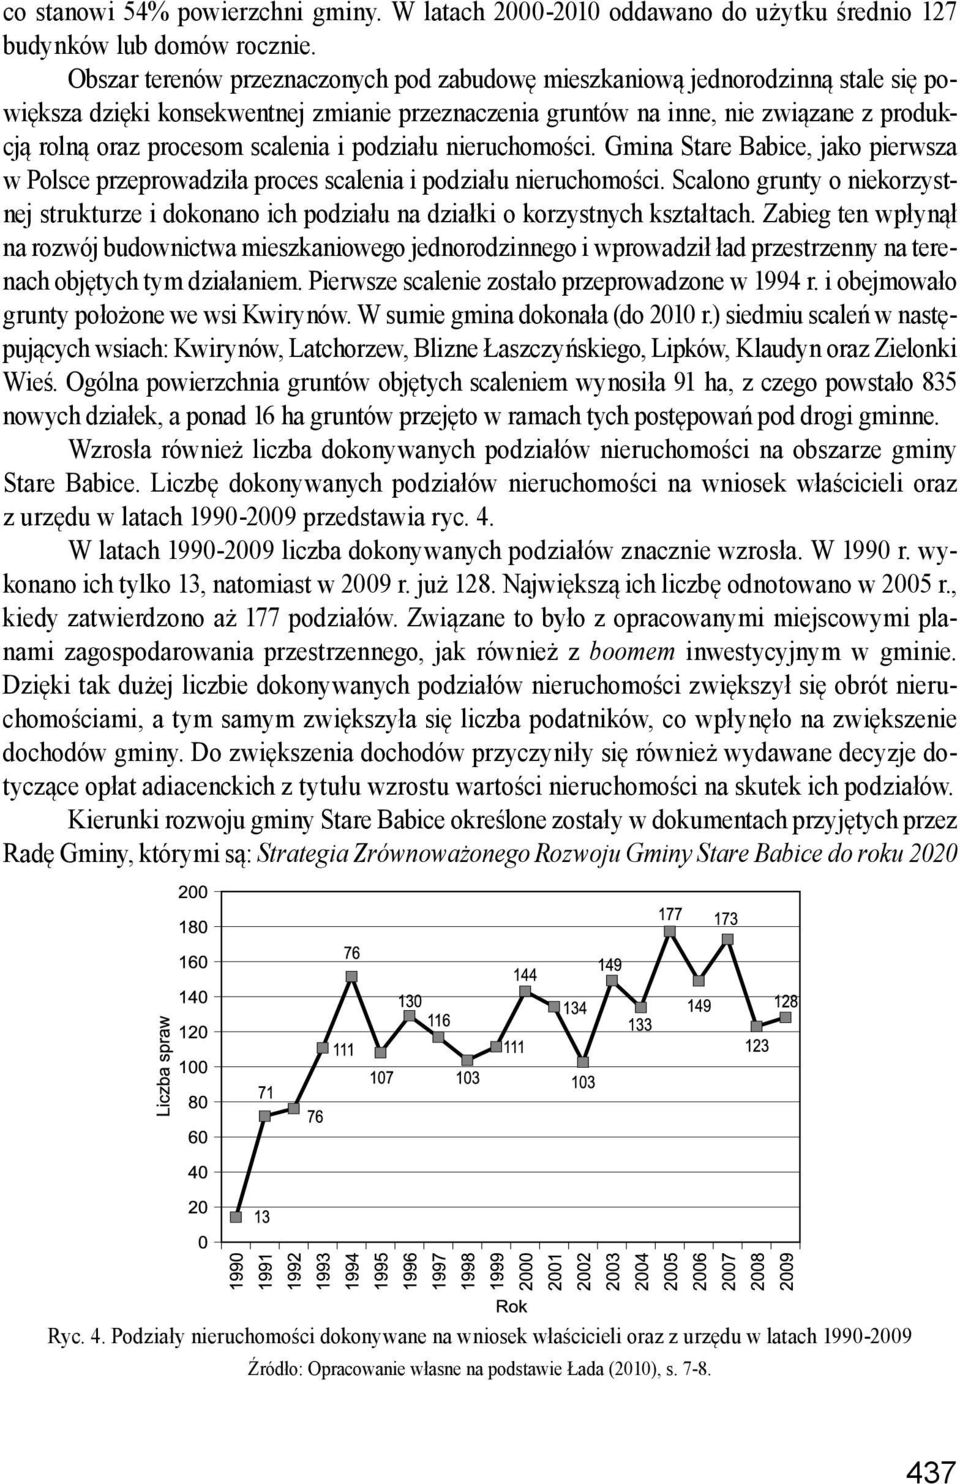 scalenia i podziału nieruchomości. Gmina Stare Babice, jako pierwsza w Polsce przeprowadziła proces scalenia i podziału nieruchomości.